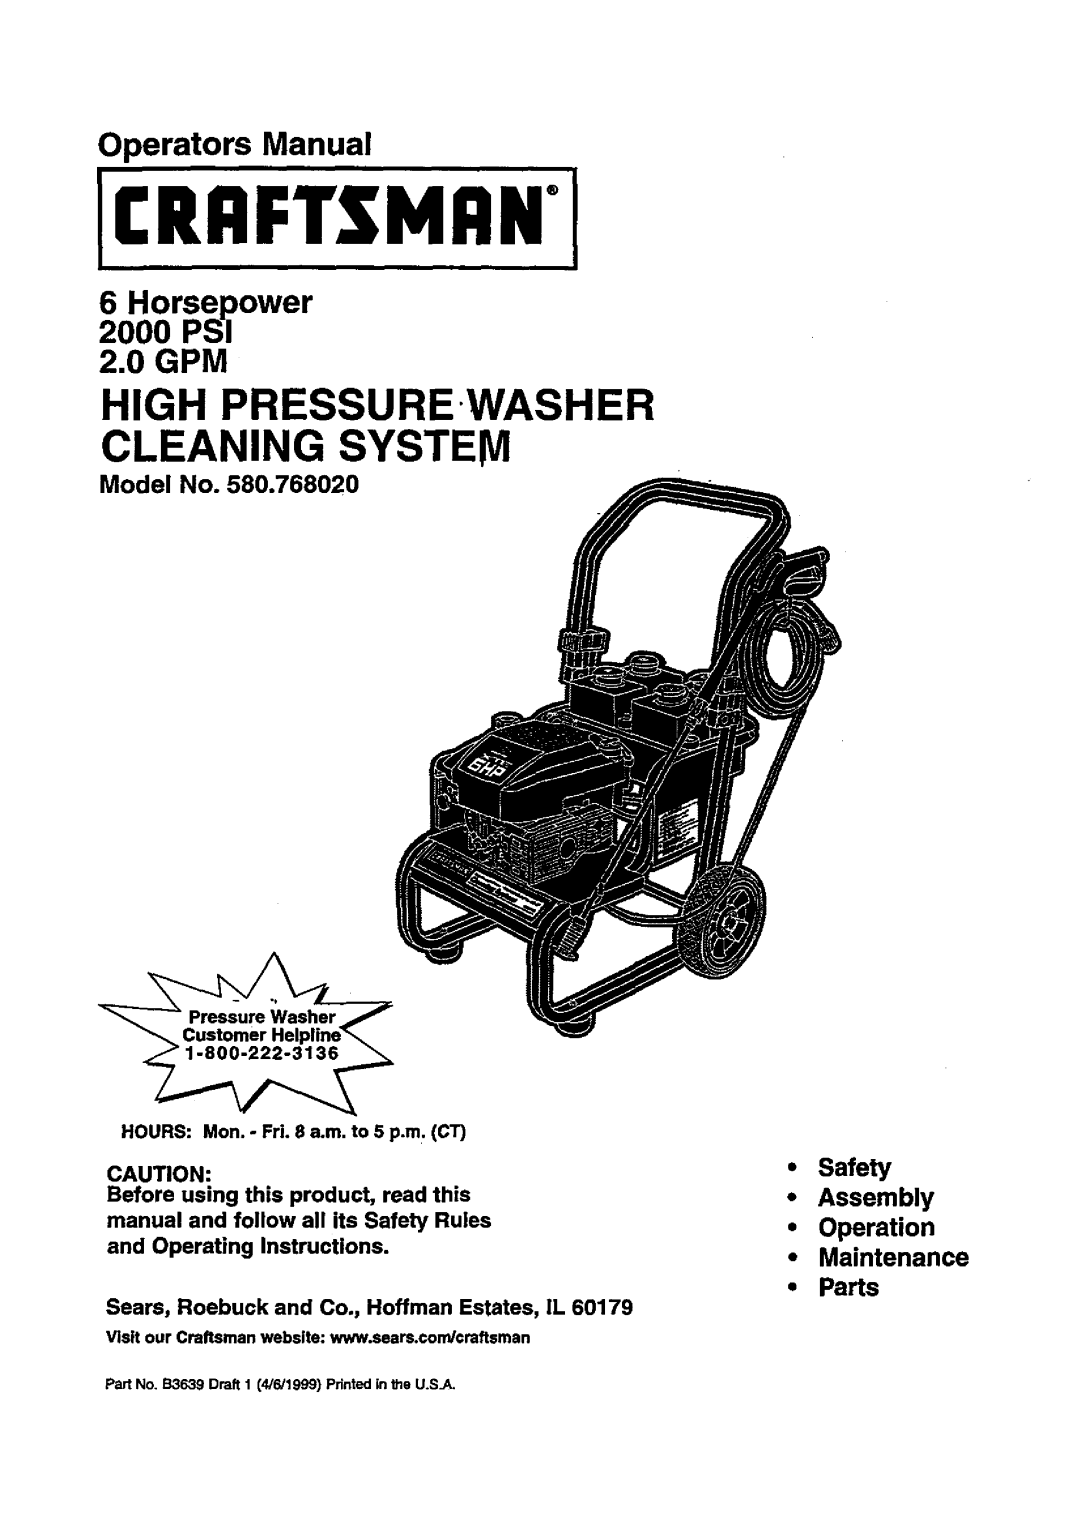 Craftsman 580.768020 manual Icraftsmani, Cleaning System, High Pressurewasher, Operators Manual, r lPwer, 2.0 GPM 